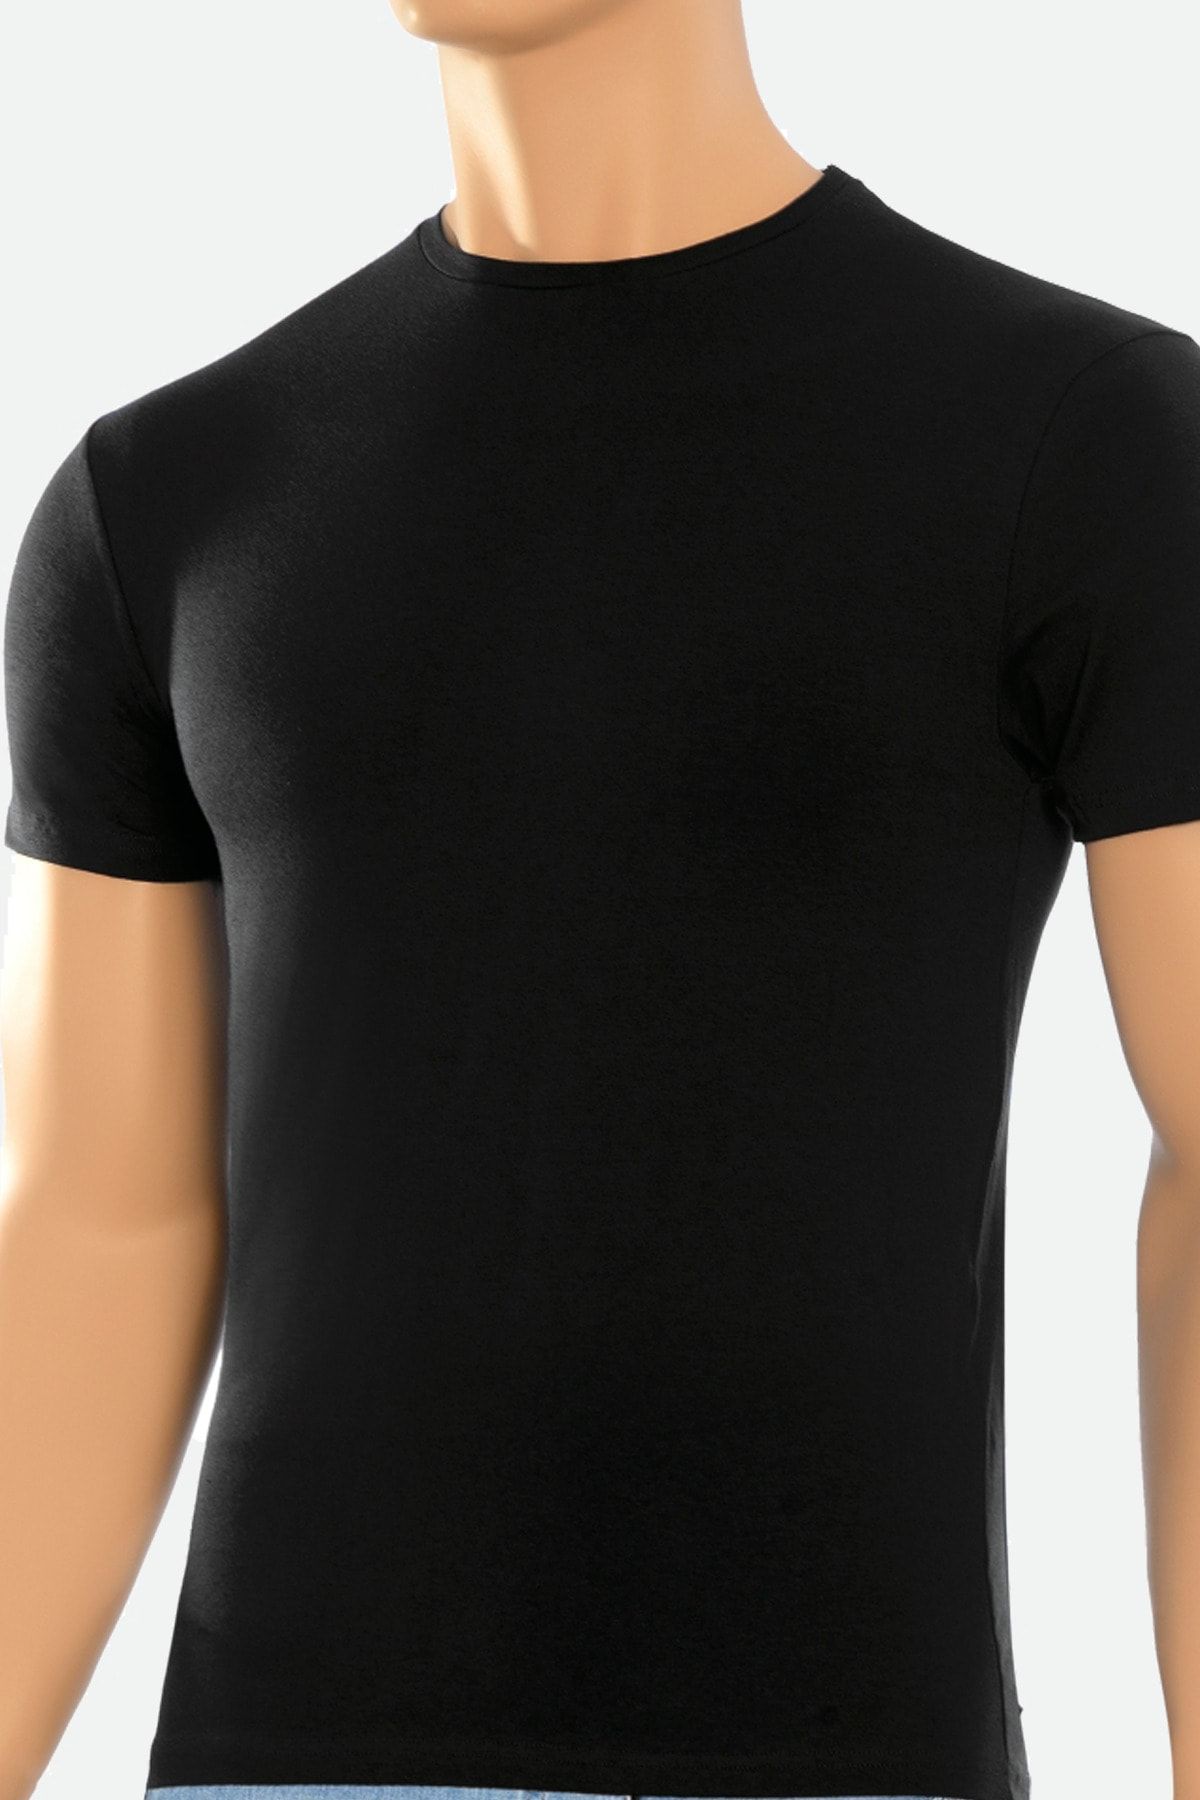 Öts 2'li Erkek Modal Kapalı Yaka T-shirt Siyah